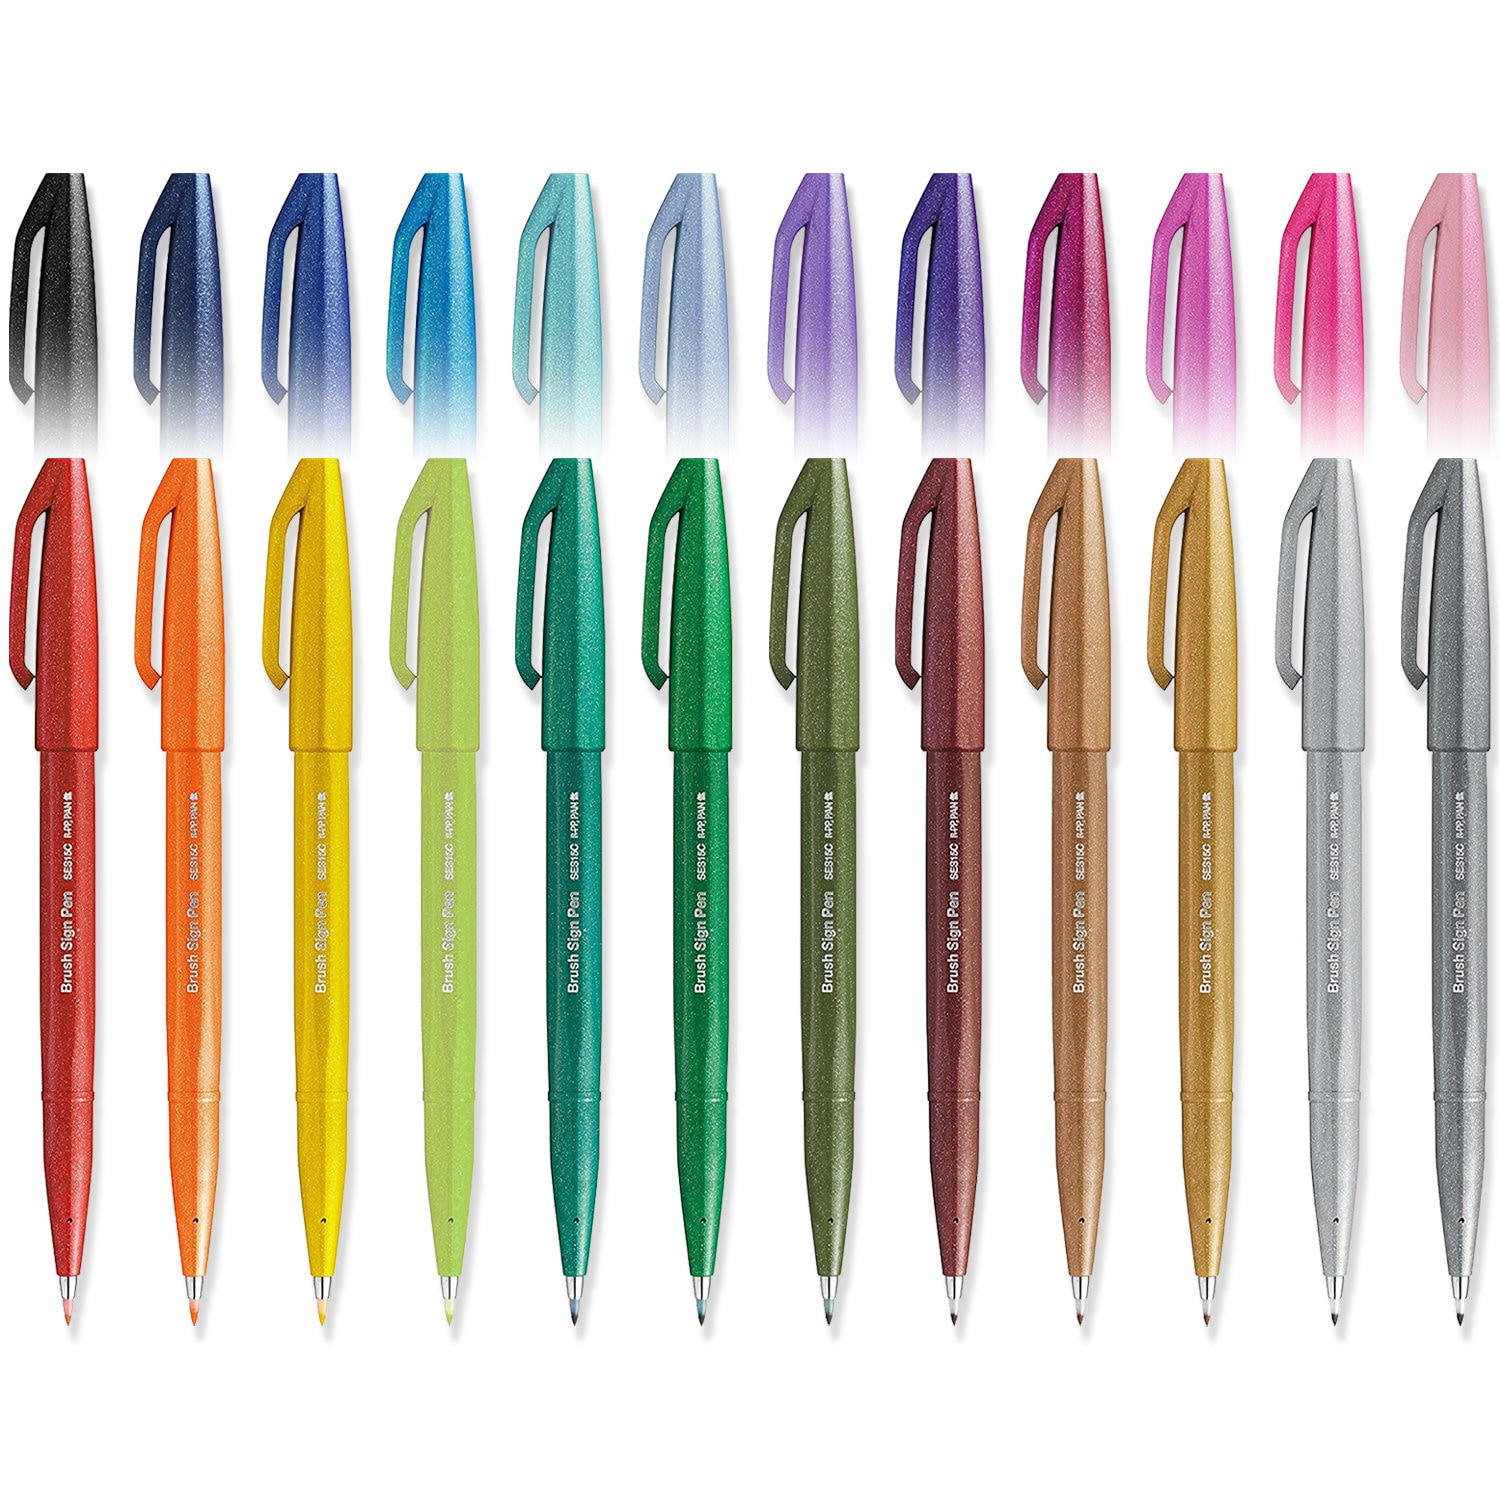 Pentel Brush Sign Pen Pastel colors SES15C - Brush Nib - Fibre Tip